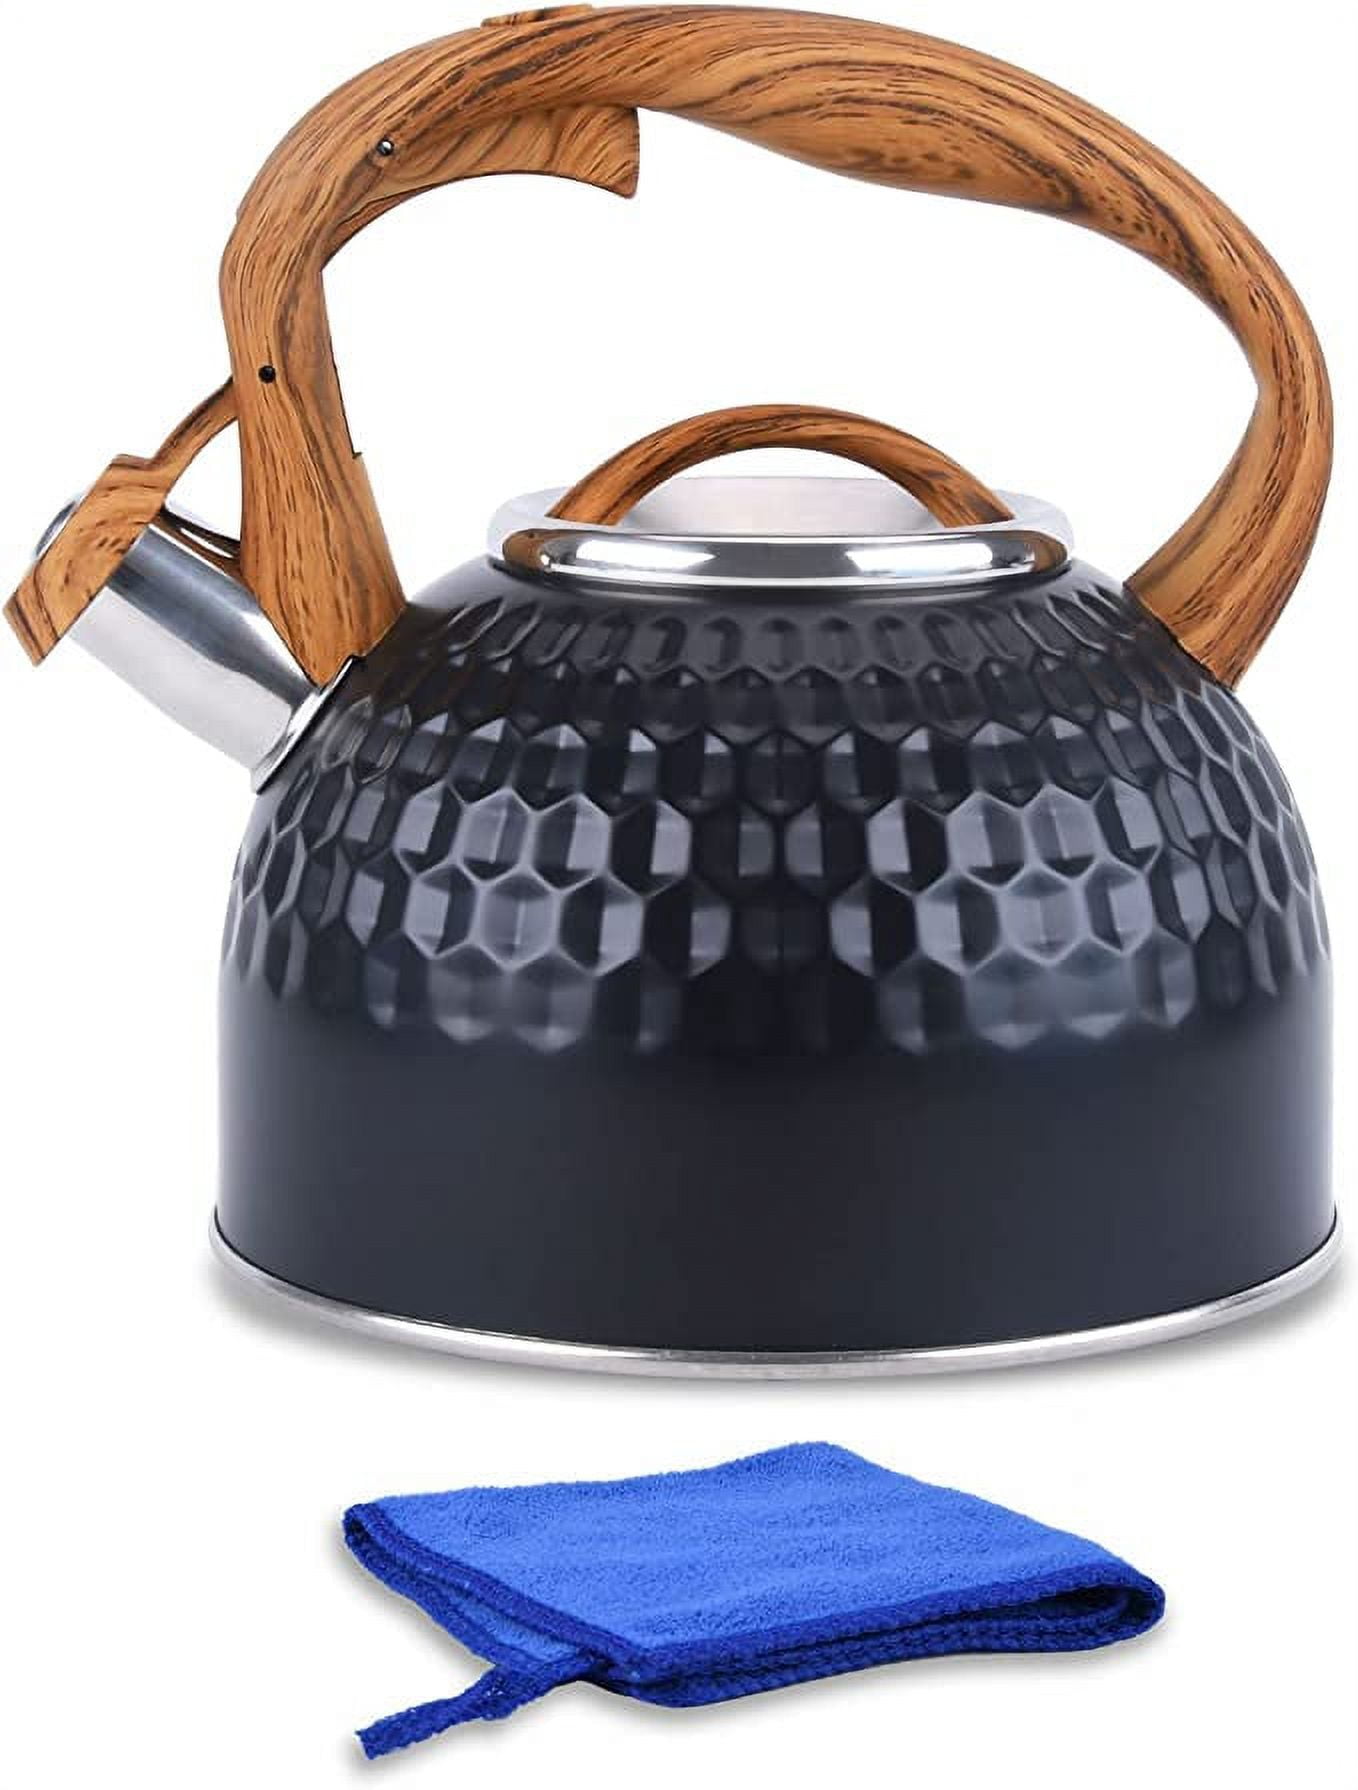 Tea Kettle, Stovetop Whistling Teakettle, Stainless Steel Material Tea Pot, Ergonomic Handle Teapot, Fast Eater Boiling